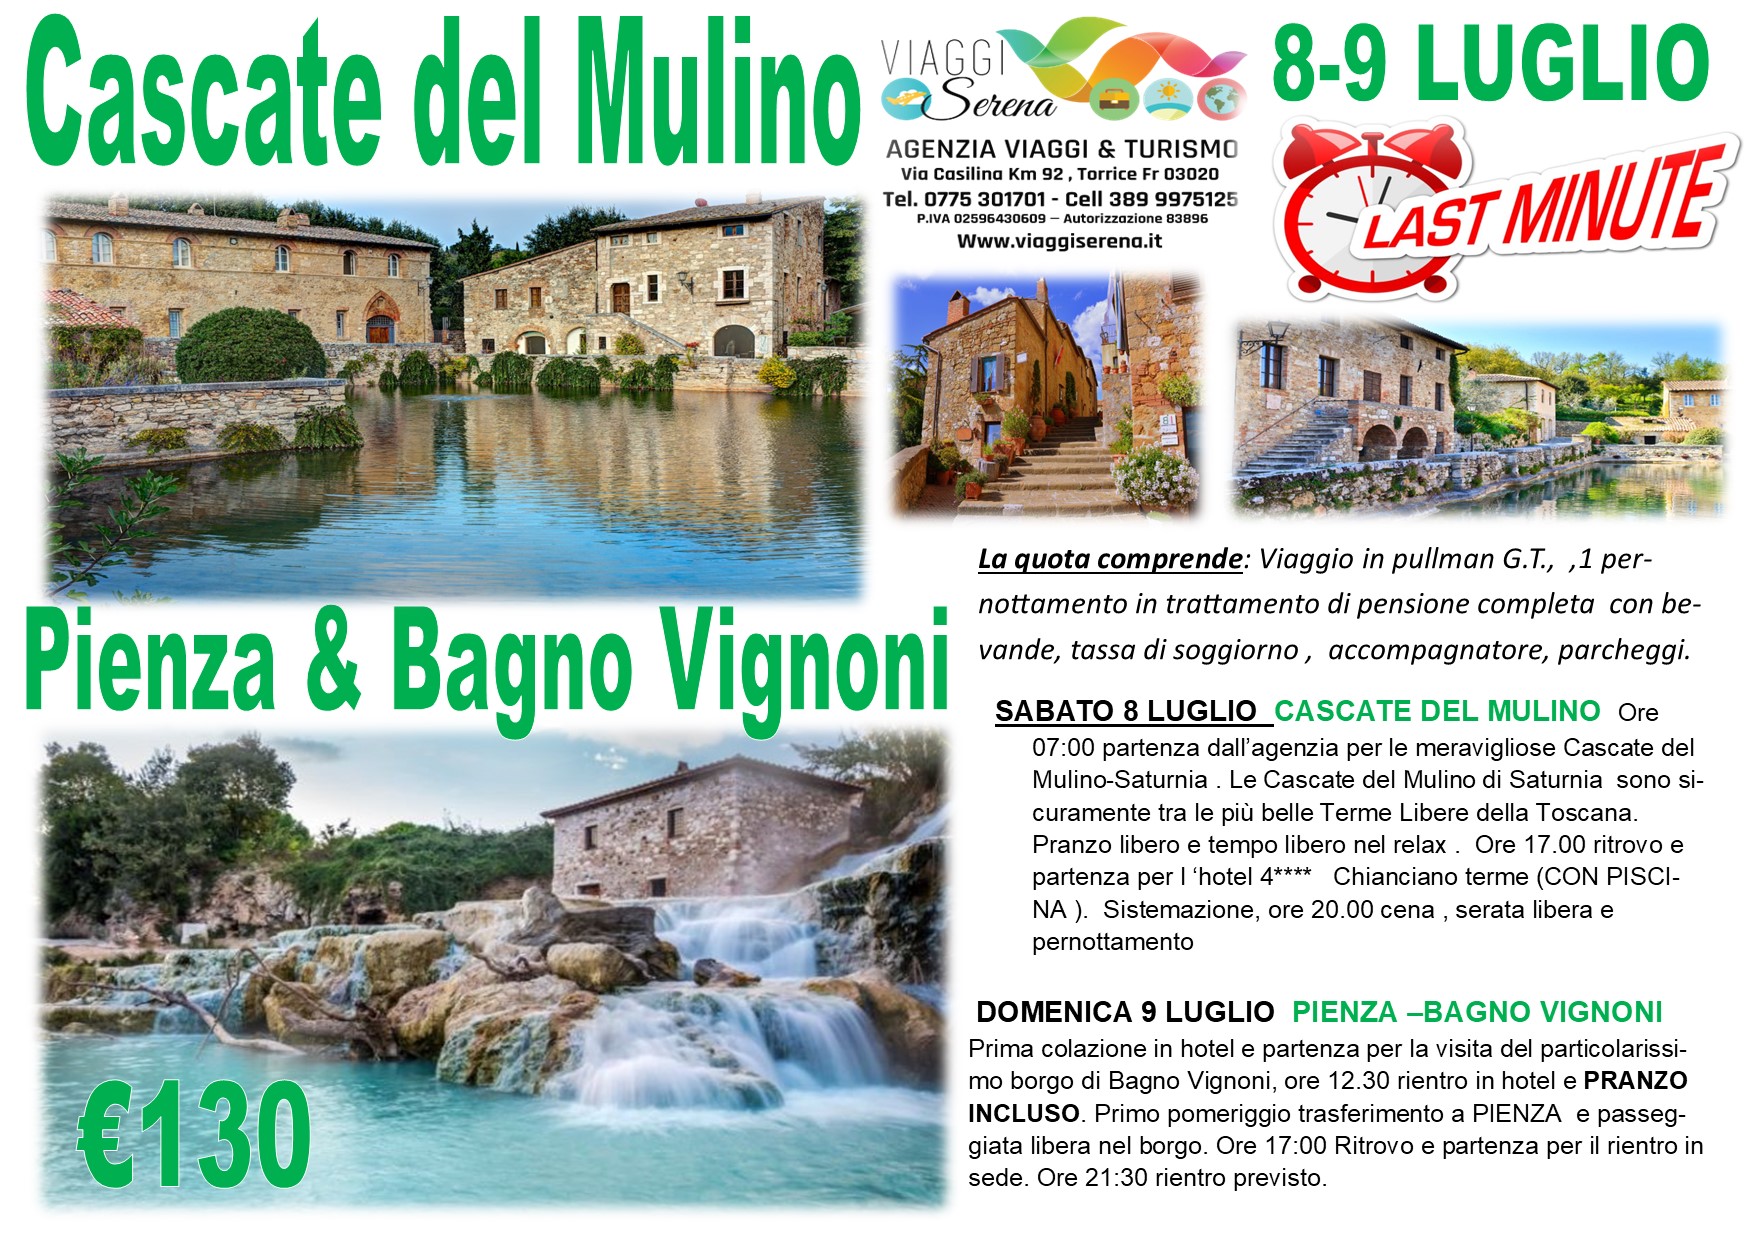 Viaggi di Gruppo: Pienza, Bagno Vignoni & Cascate del Mulino “pensione completa” 8-9 Luglio € 130,00